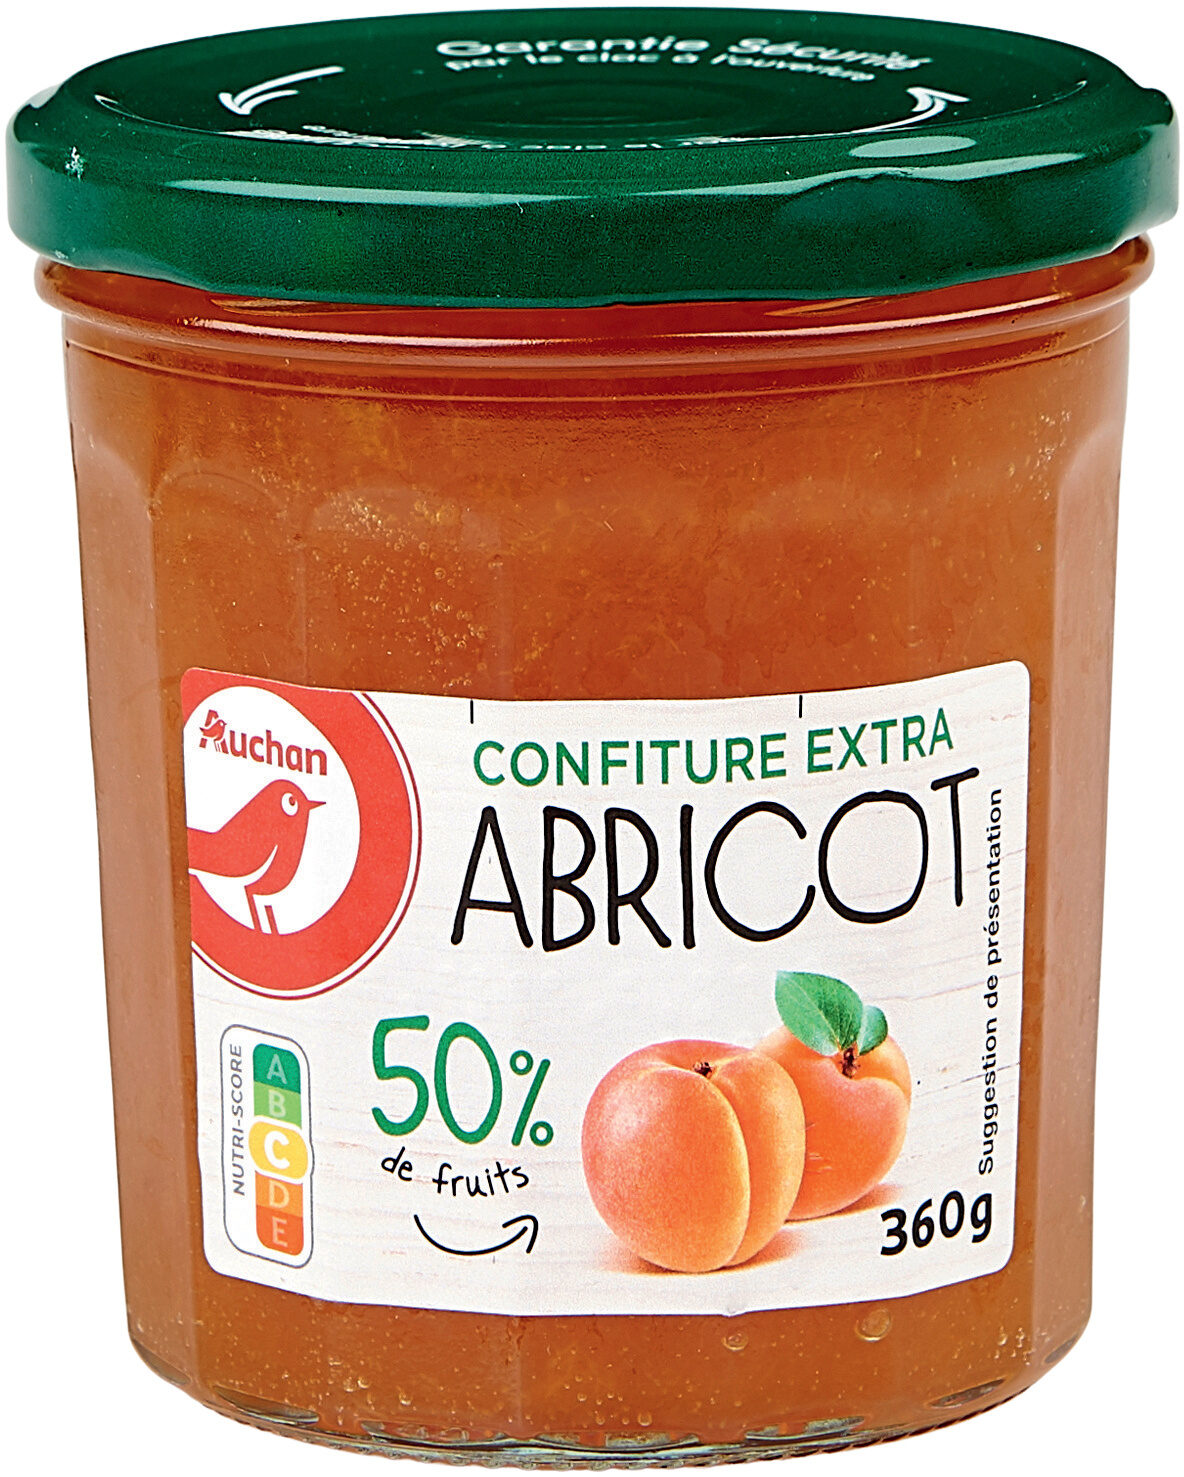 Confiture extra abricots - Produit